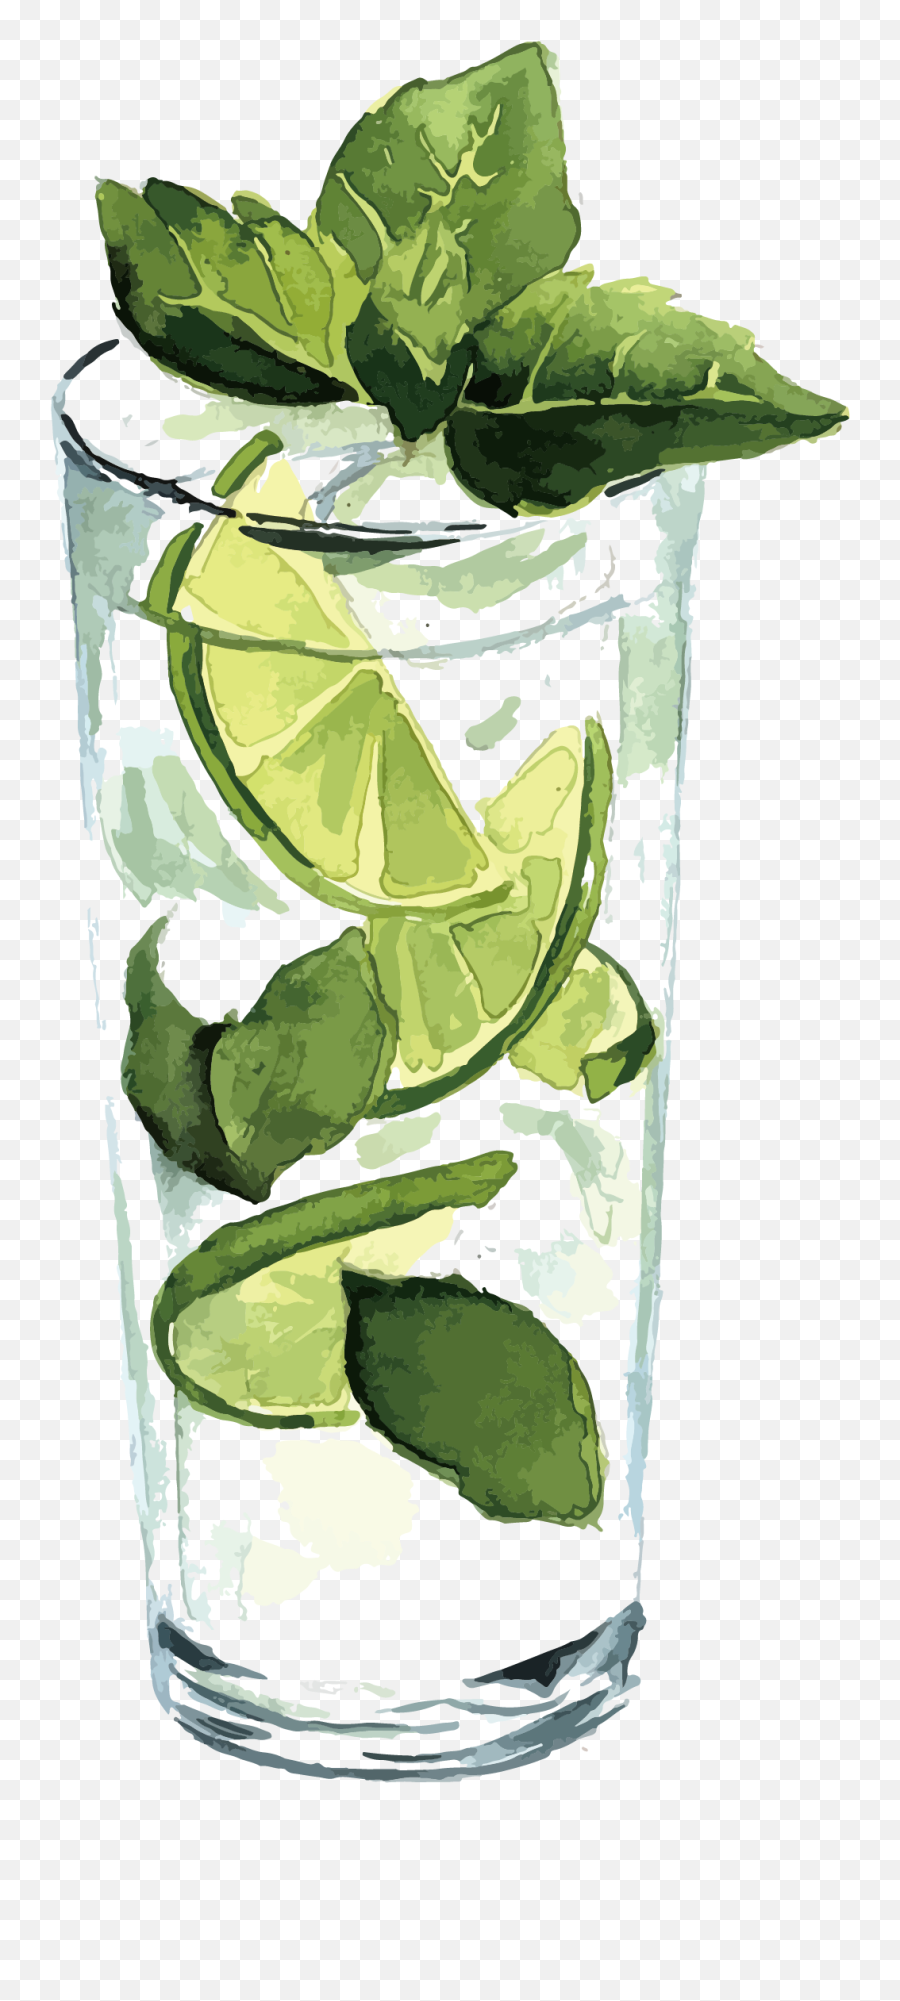 Lemon Juice - Lemon Transparent Png Image U0026 Lemon Clipart Lime Juice Clipart Watercolor,Lemon Clipart Png